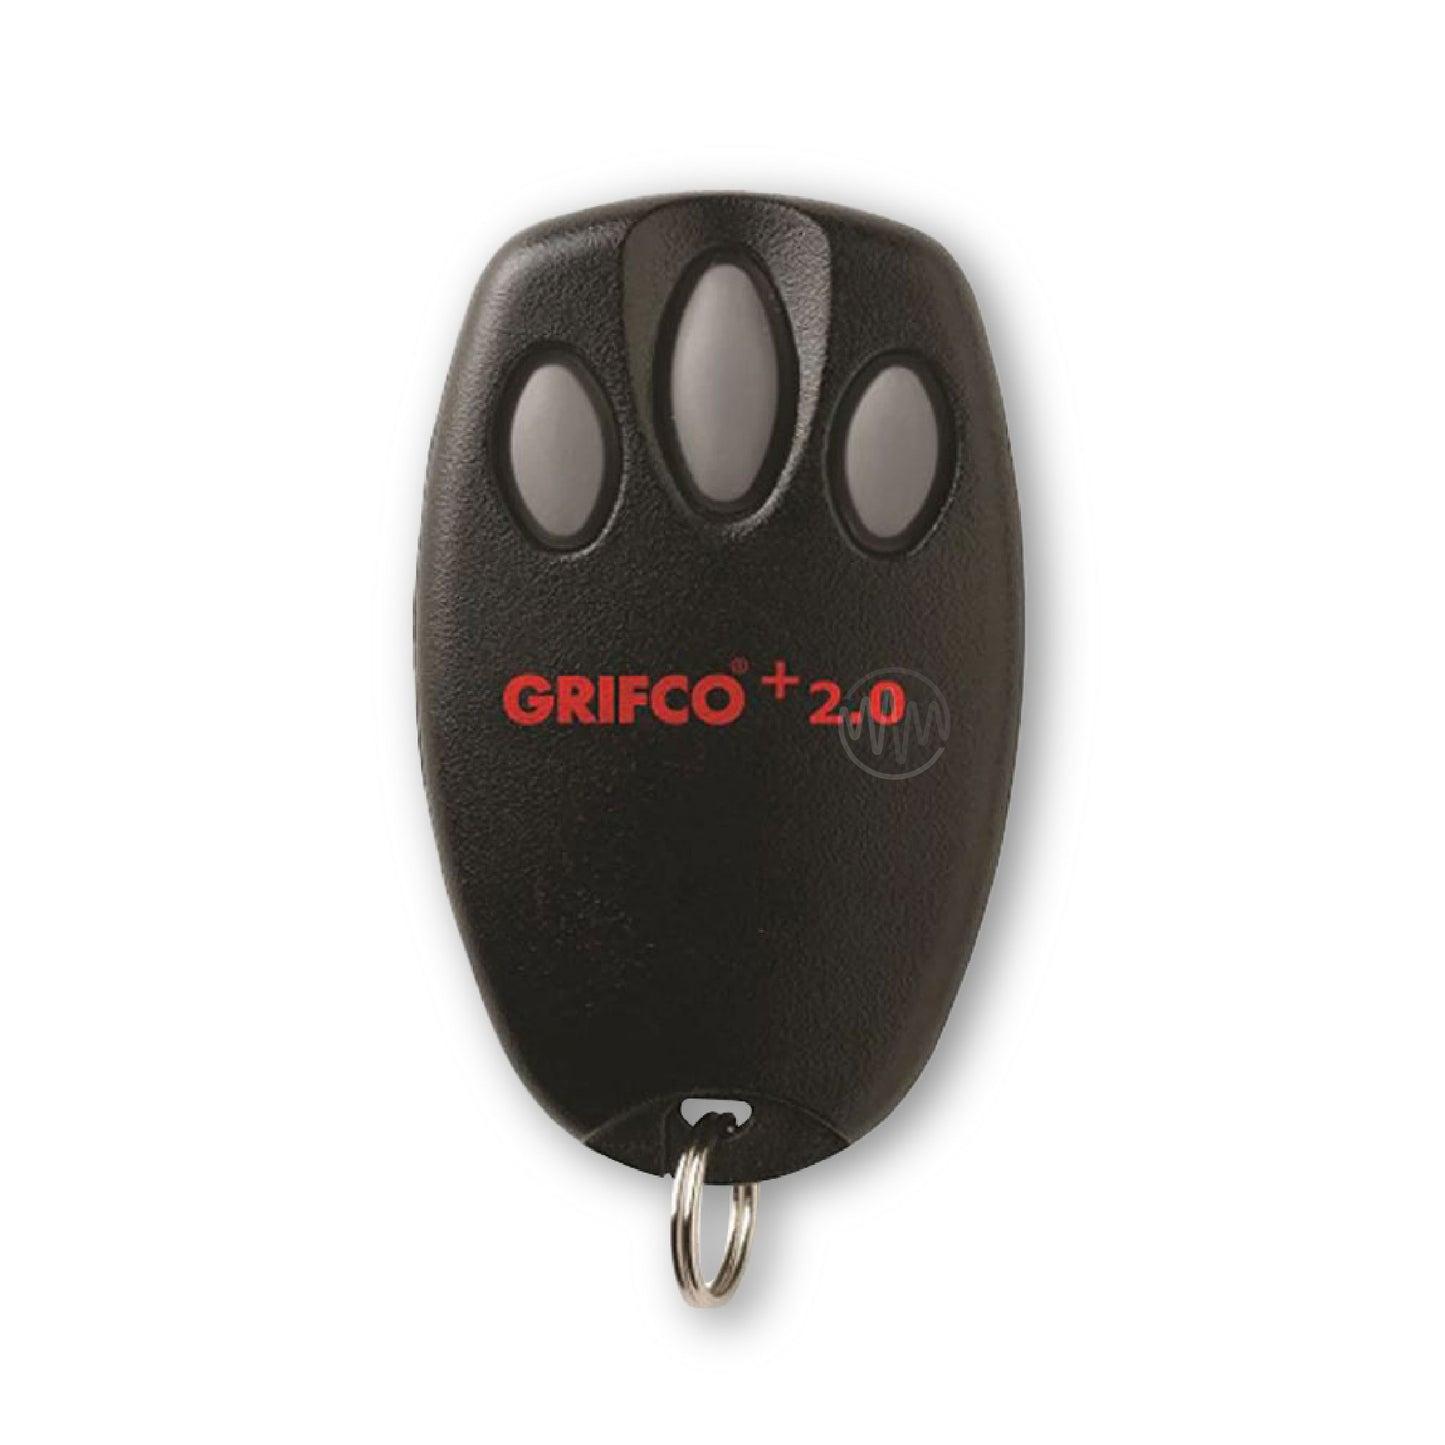 Grifco +2.0 E945G Garage & Gate Remote